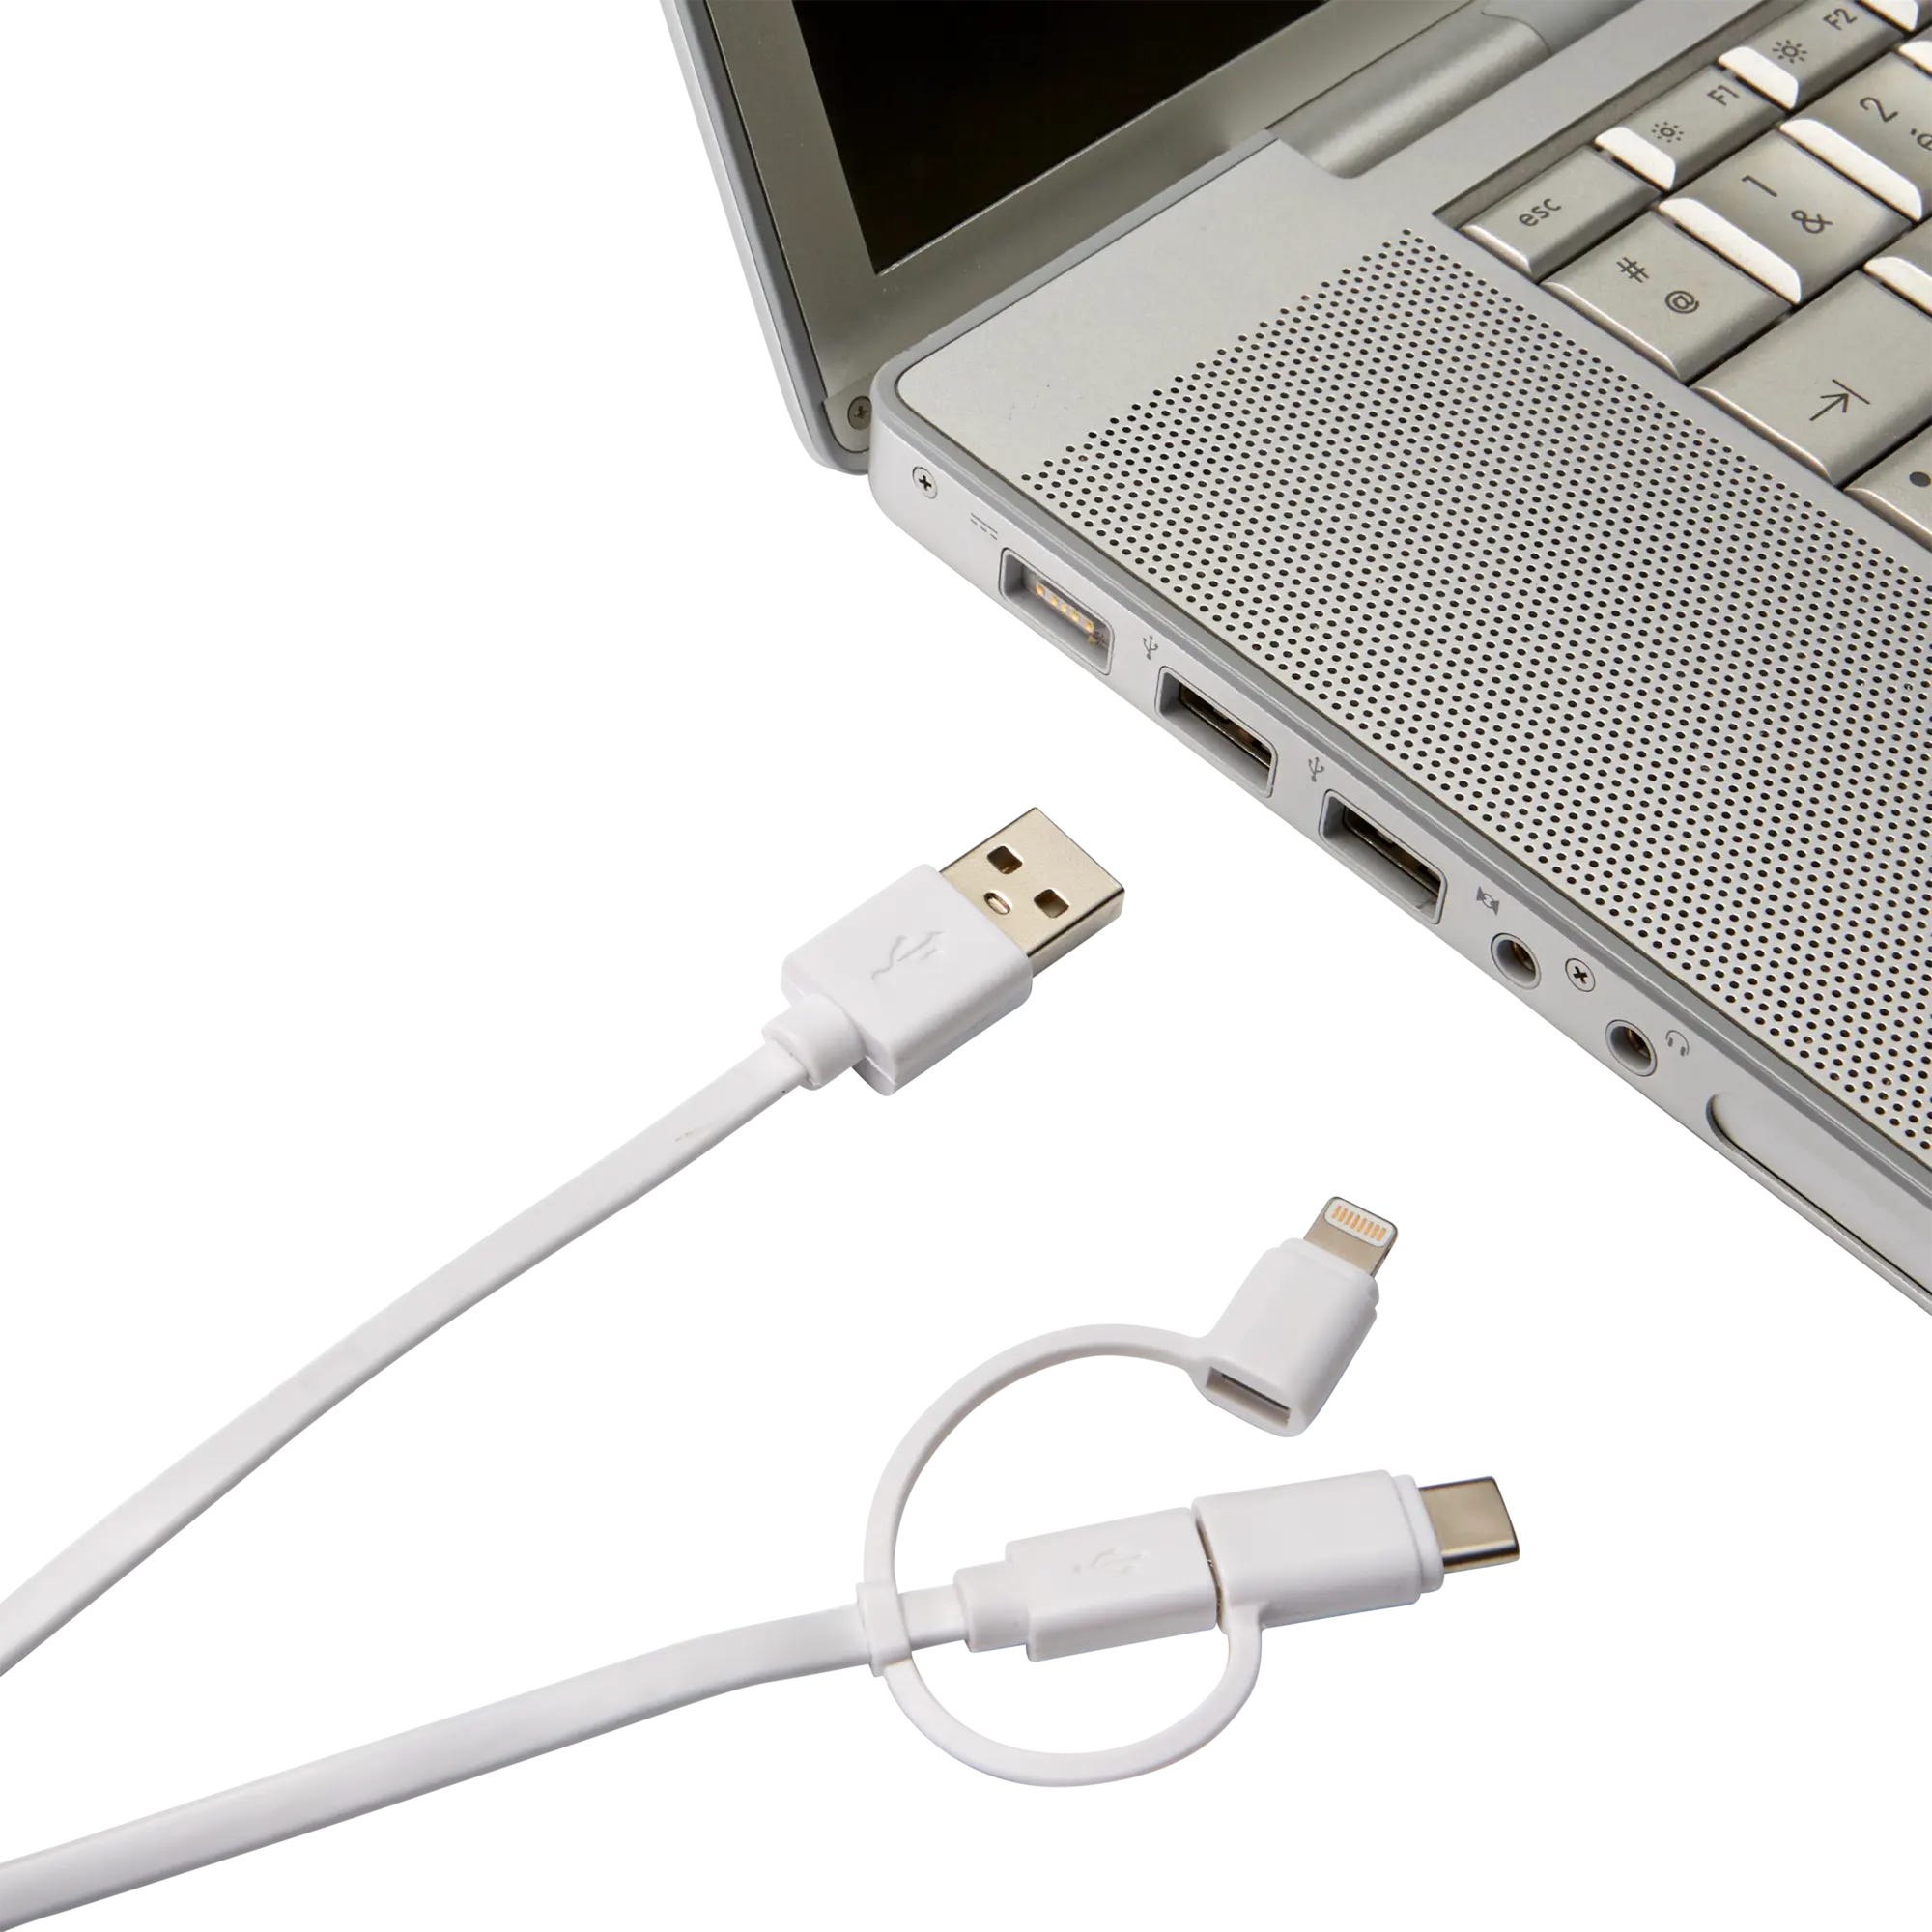 Câble USB Lightning chargeur 3 mètres pour iPhone 6 - Chargeur